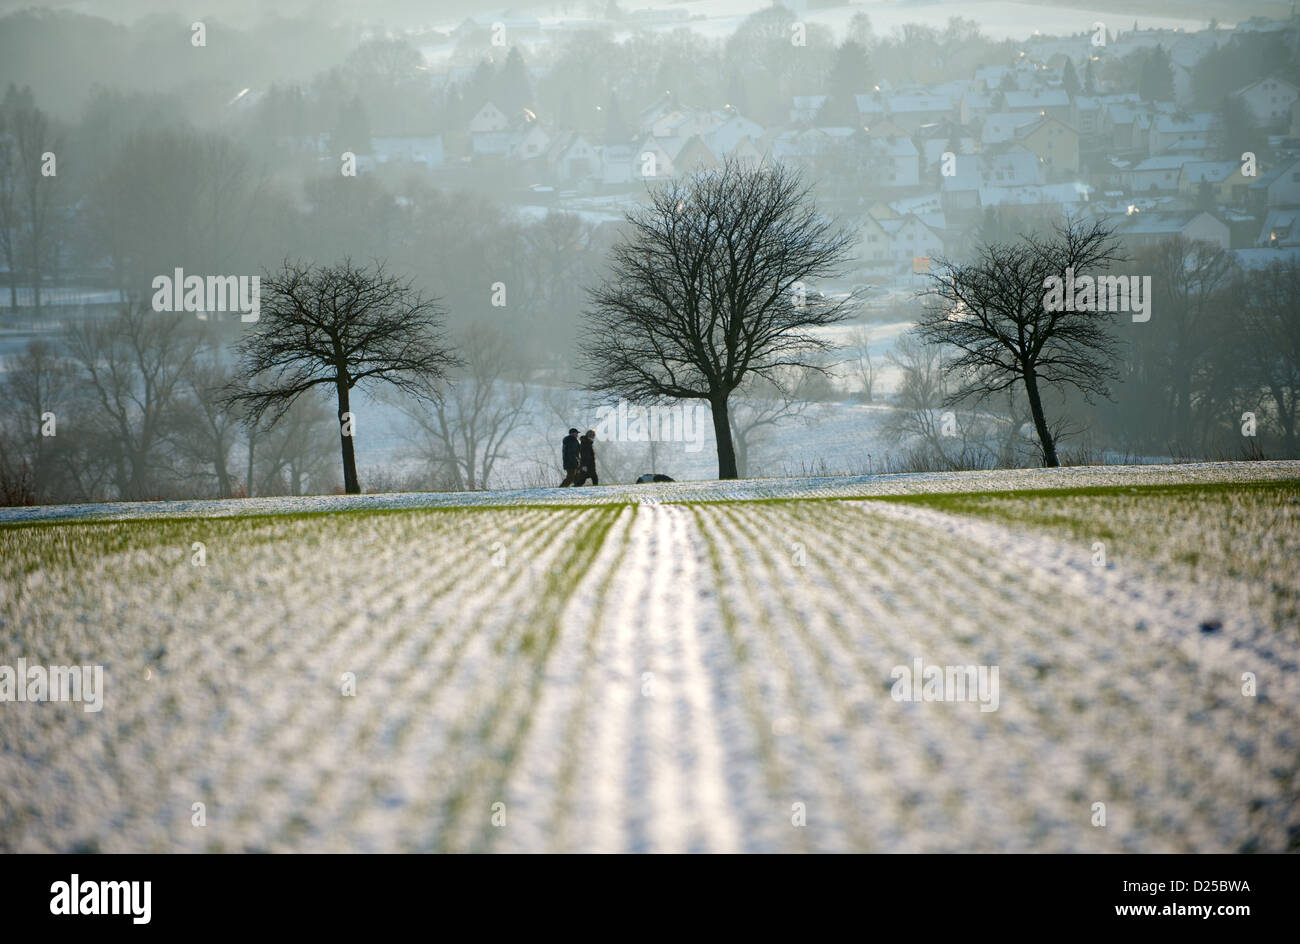 Eine dünne Schicht Schnee deckt ein Feld in der Nähe von Vollmarshausener, Deutschland, 14. Januar 2013. Foto: UWE ZUCCHI Stockfoto